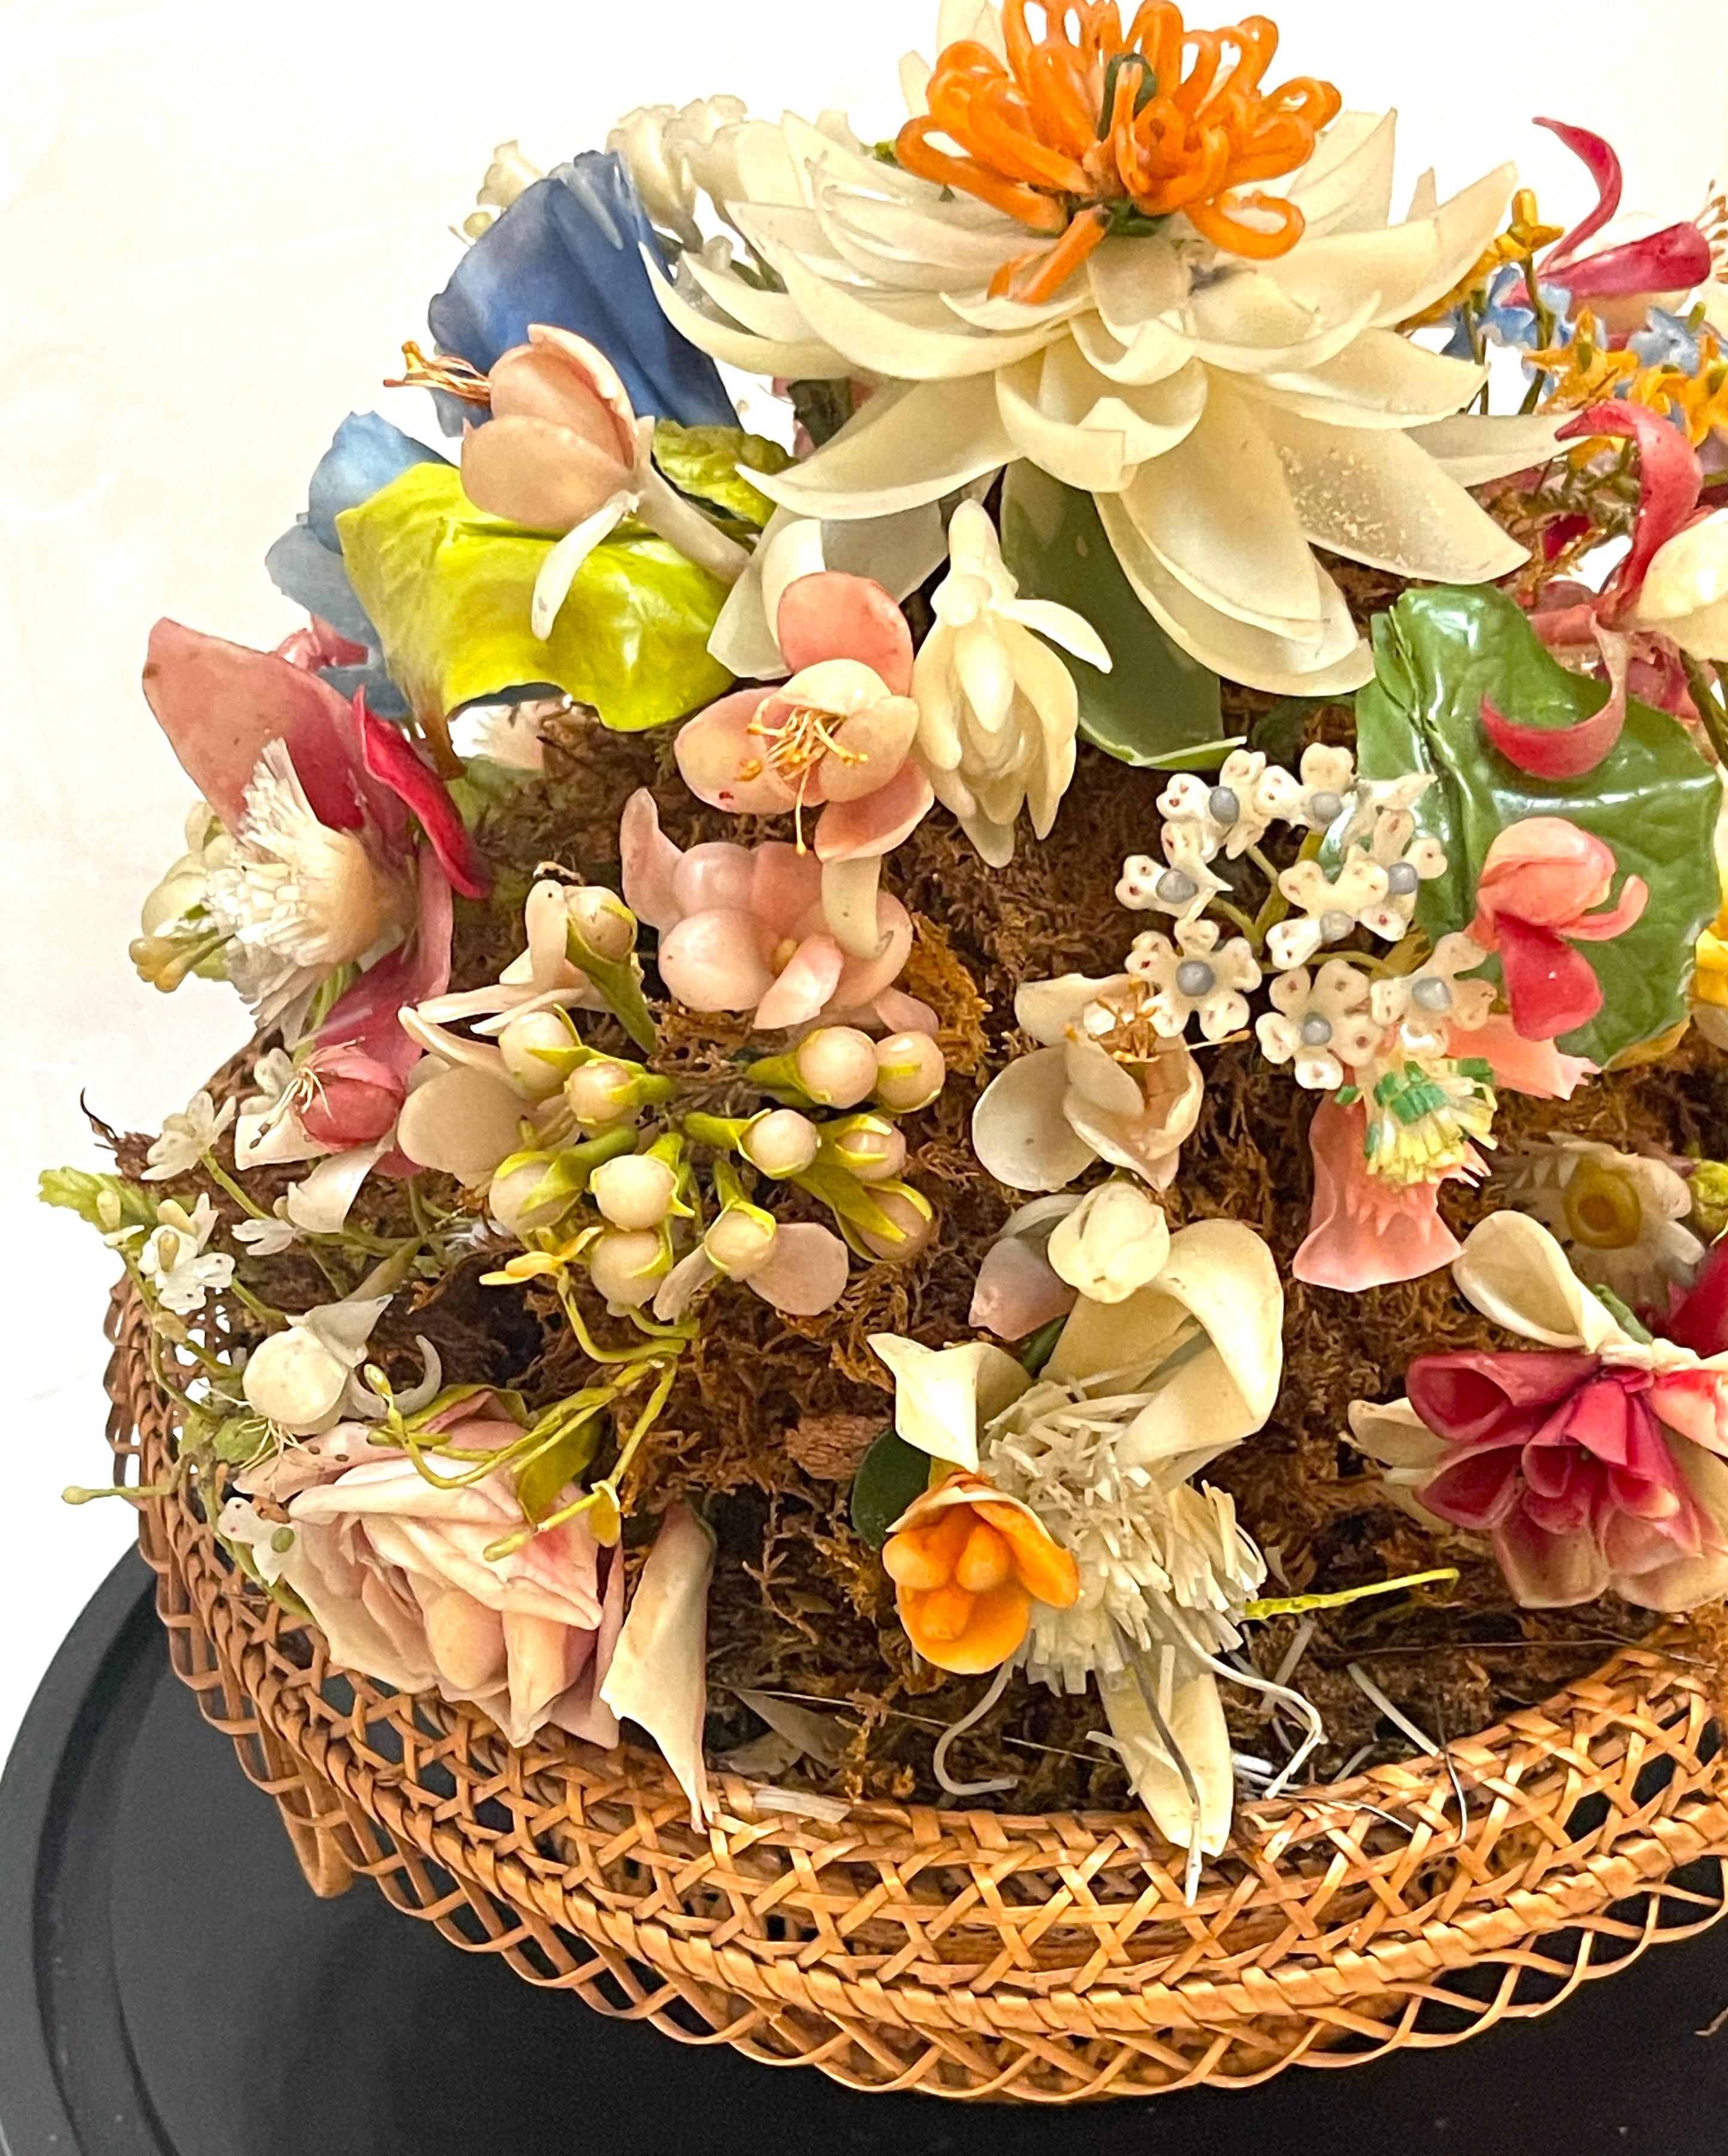 Victorian Wax Flower Still Life Basket Under Round Glass Dome For Sale 6